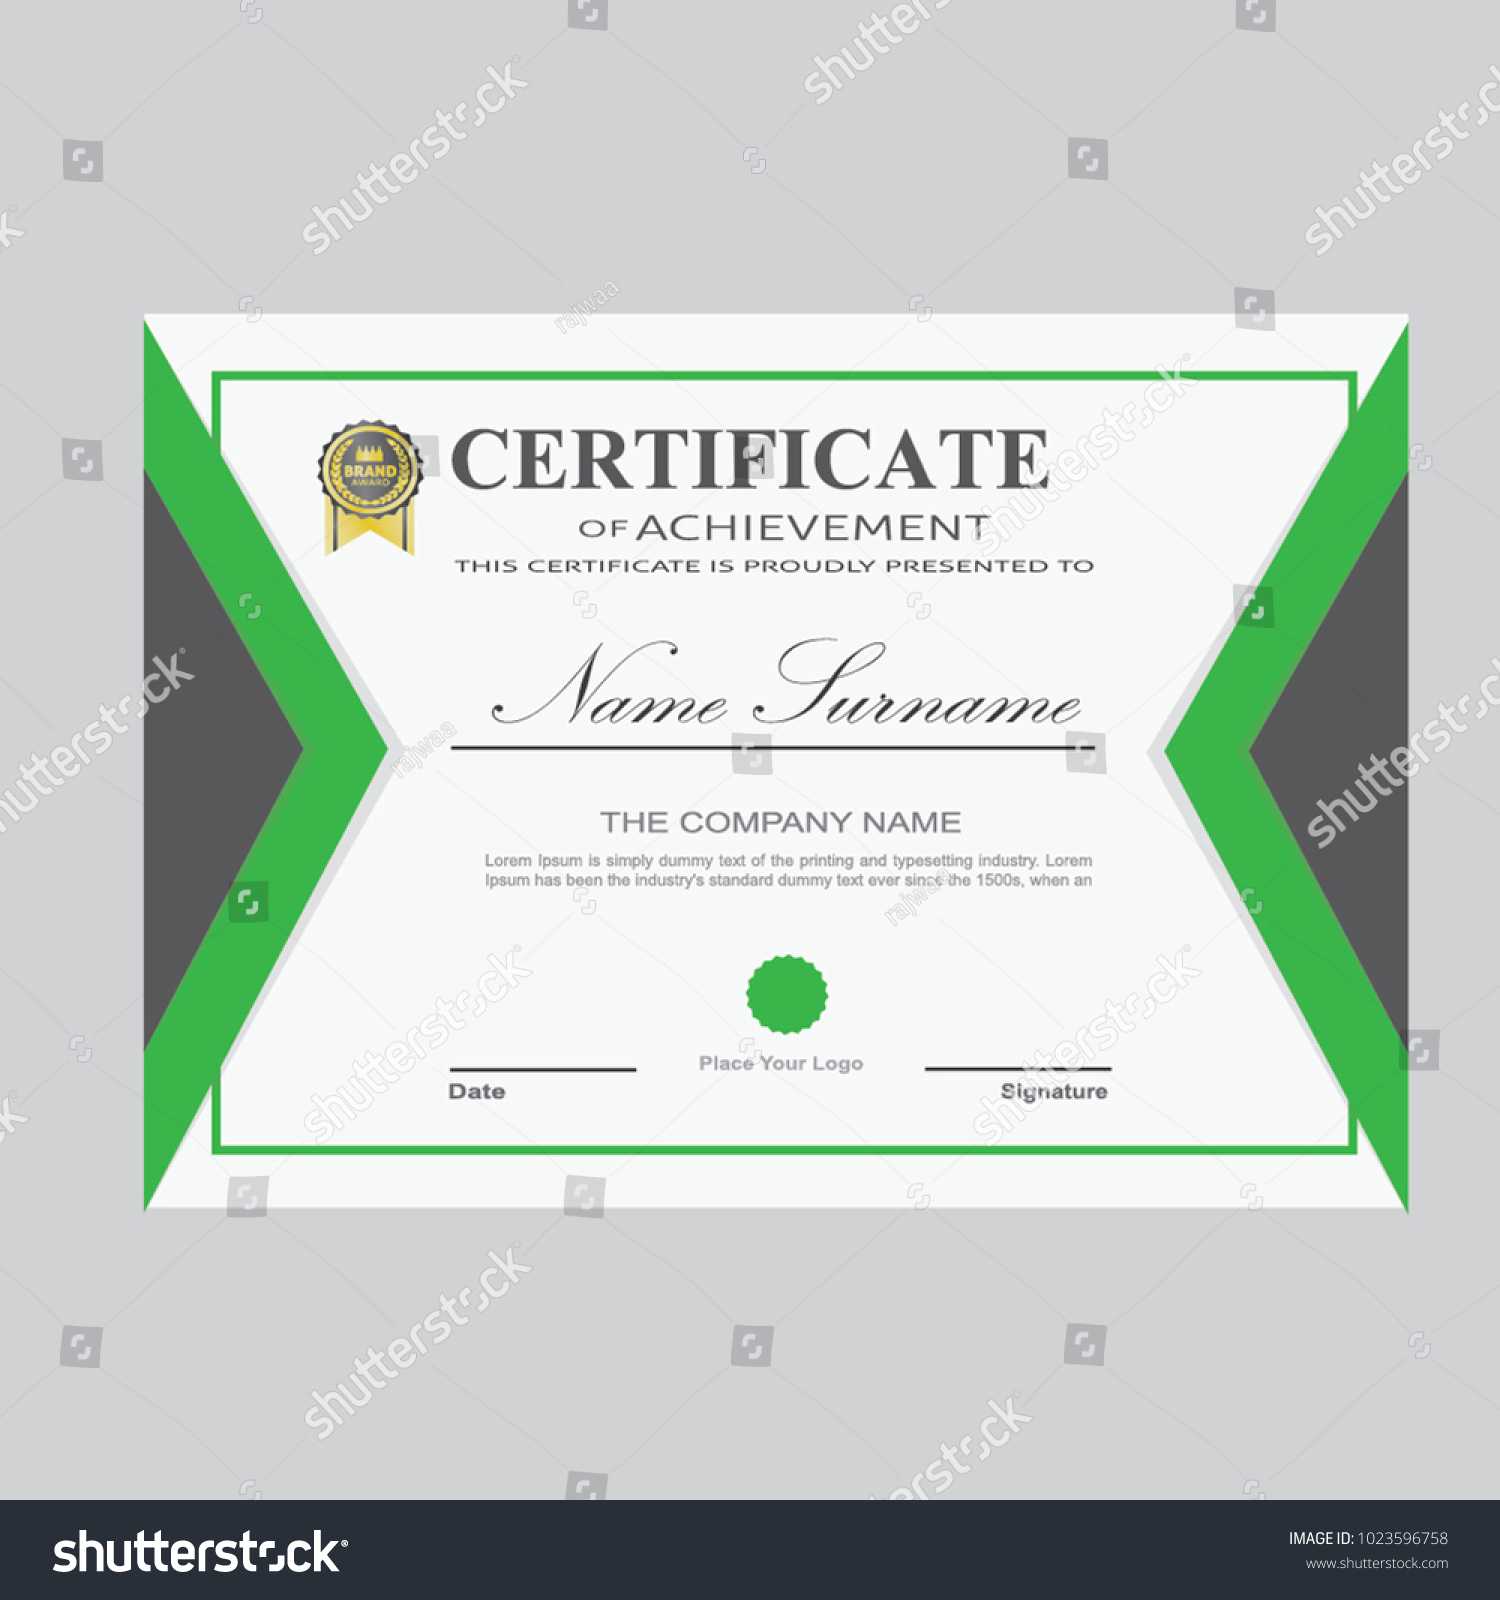 Certificate Template Modern A4 Horizontal Landscape Stock For Landscape Certificate Templates